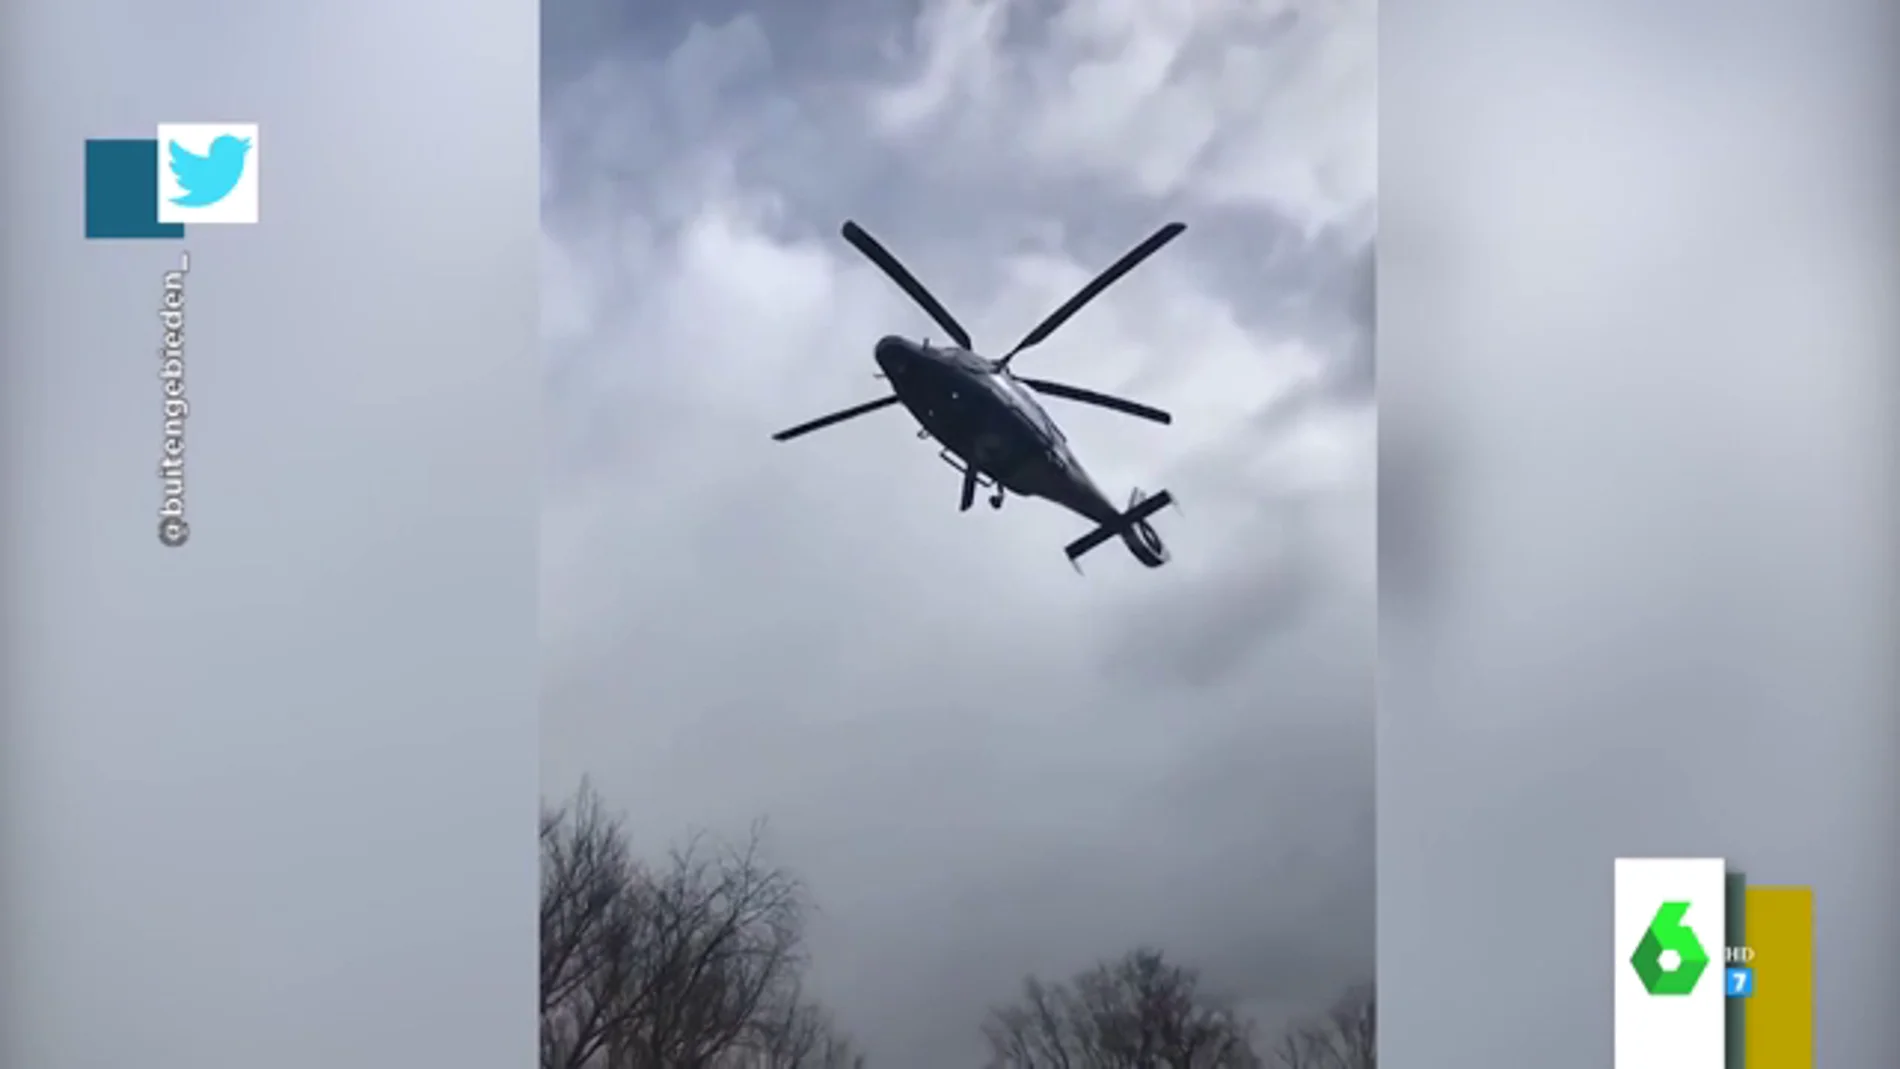 El sorprendente vídeo de un helicóptero volando sin "mover las hélices" 